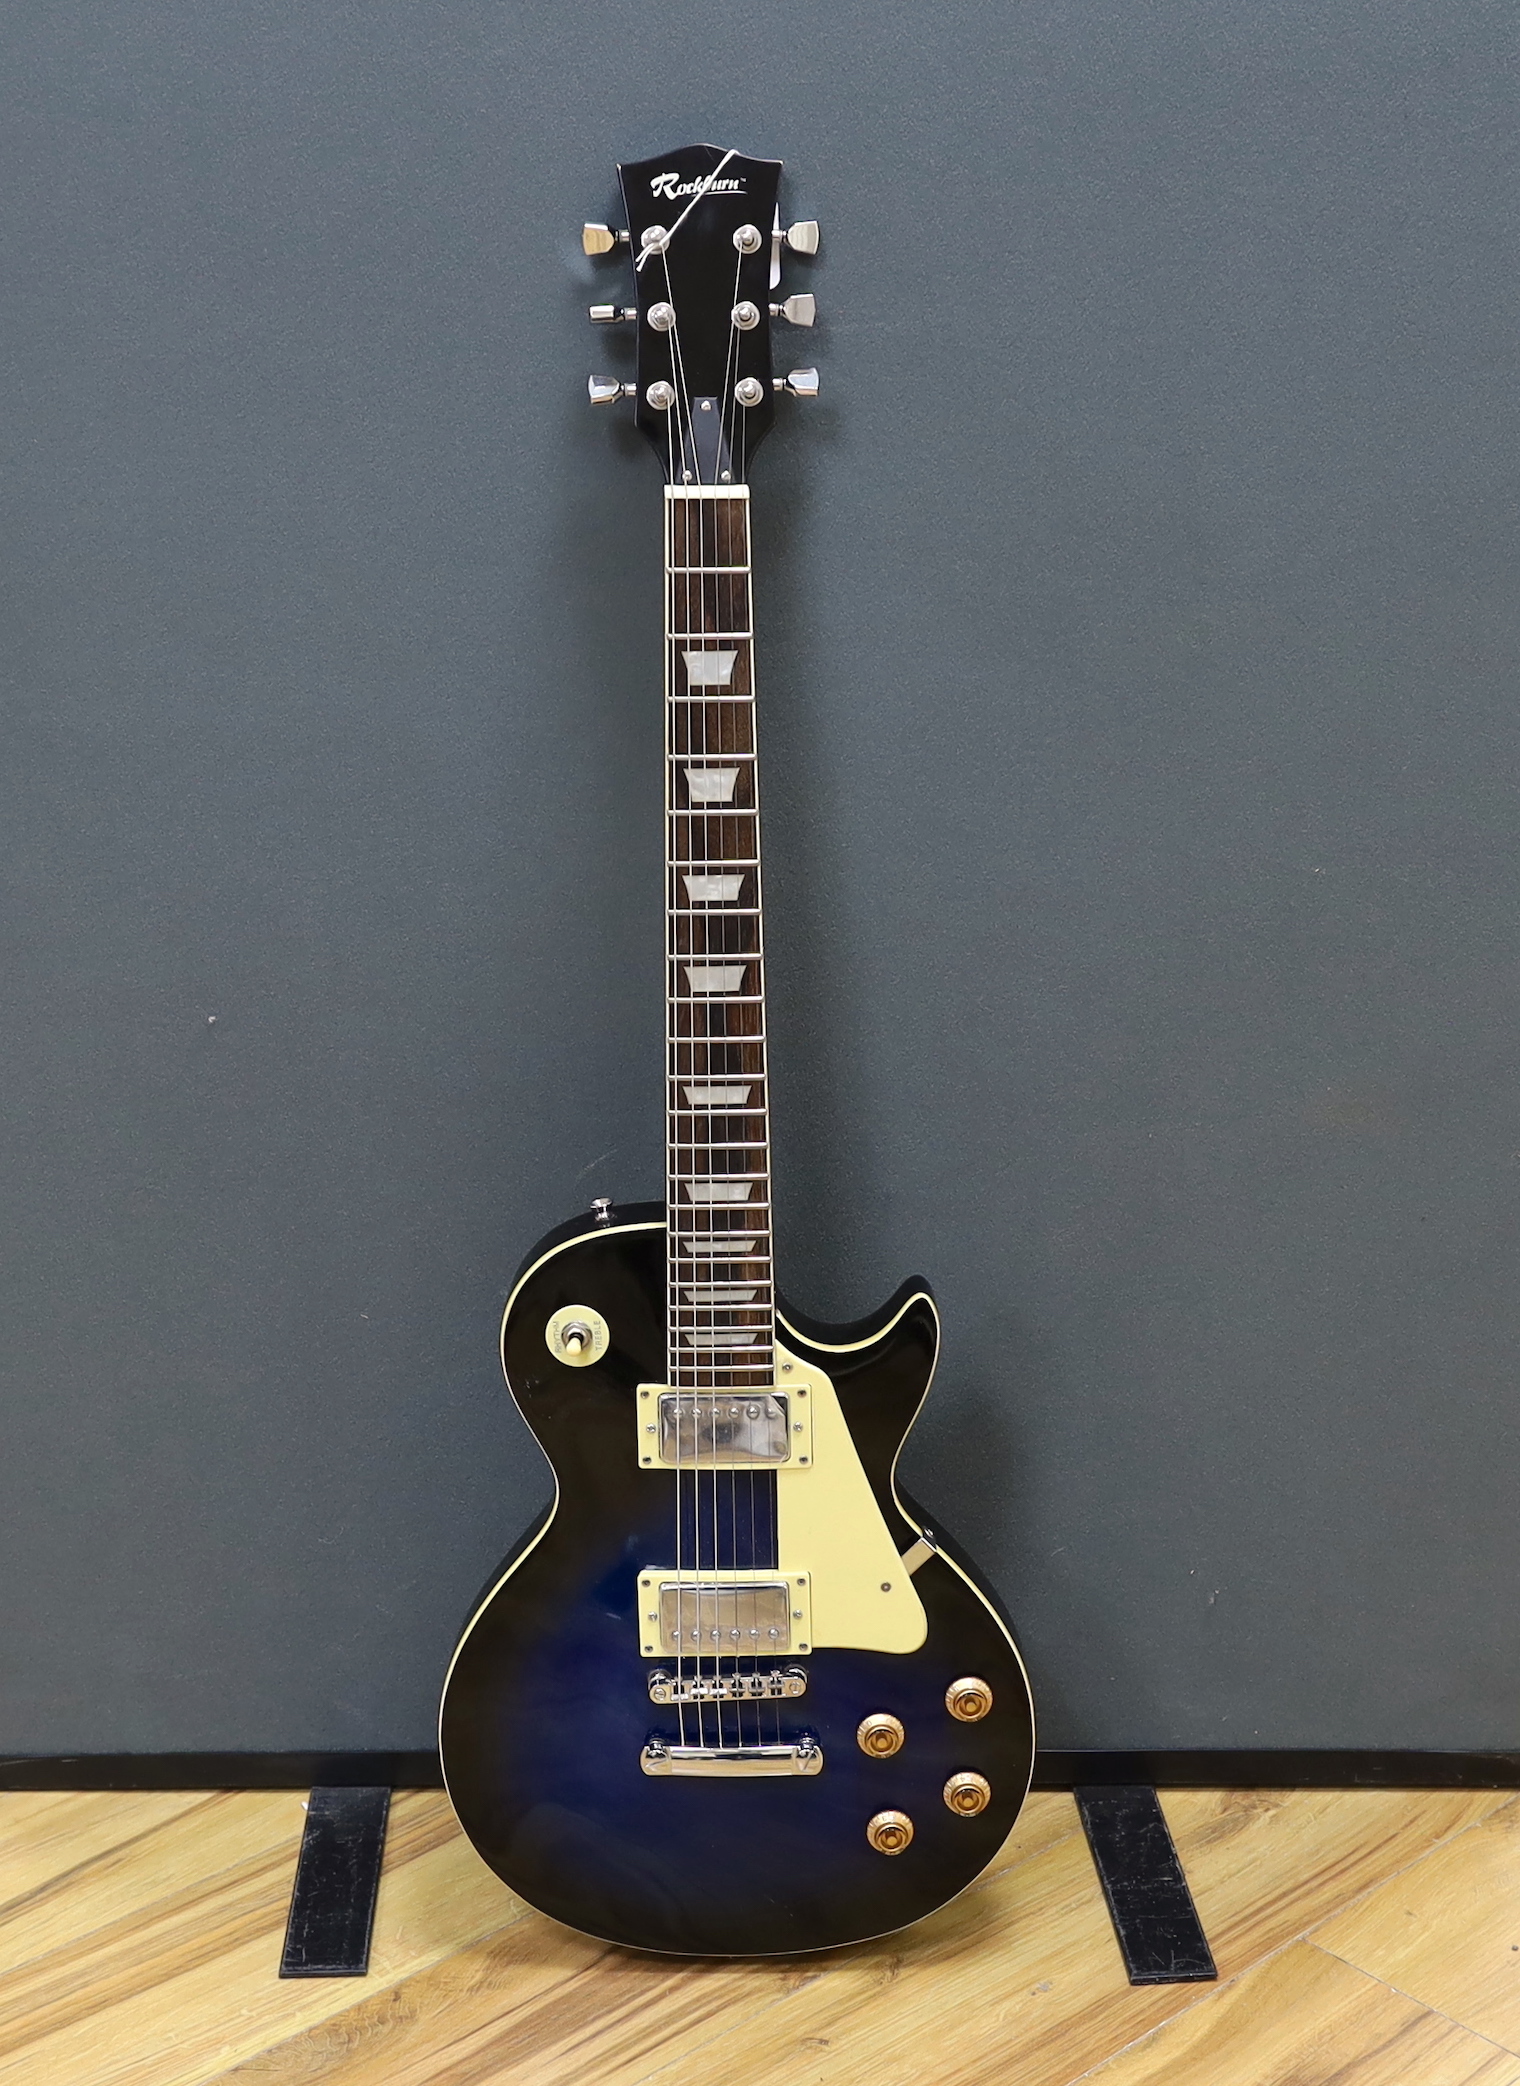 A Rockburn electric guitar, Les Paul copy